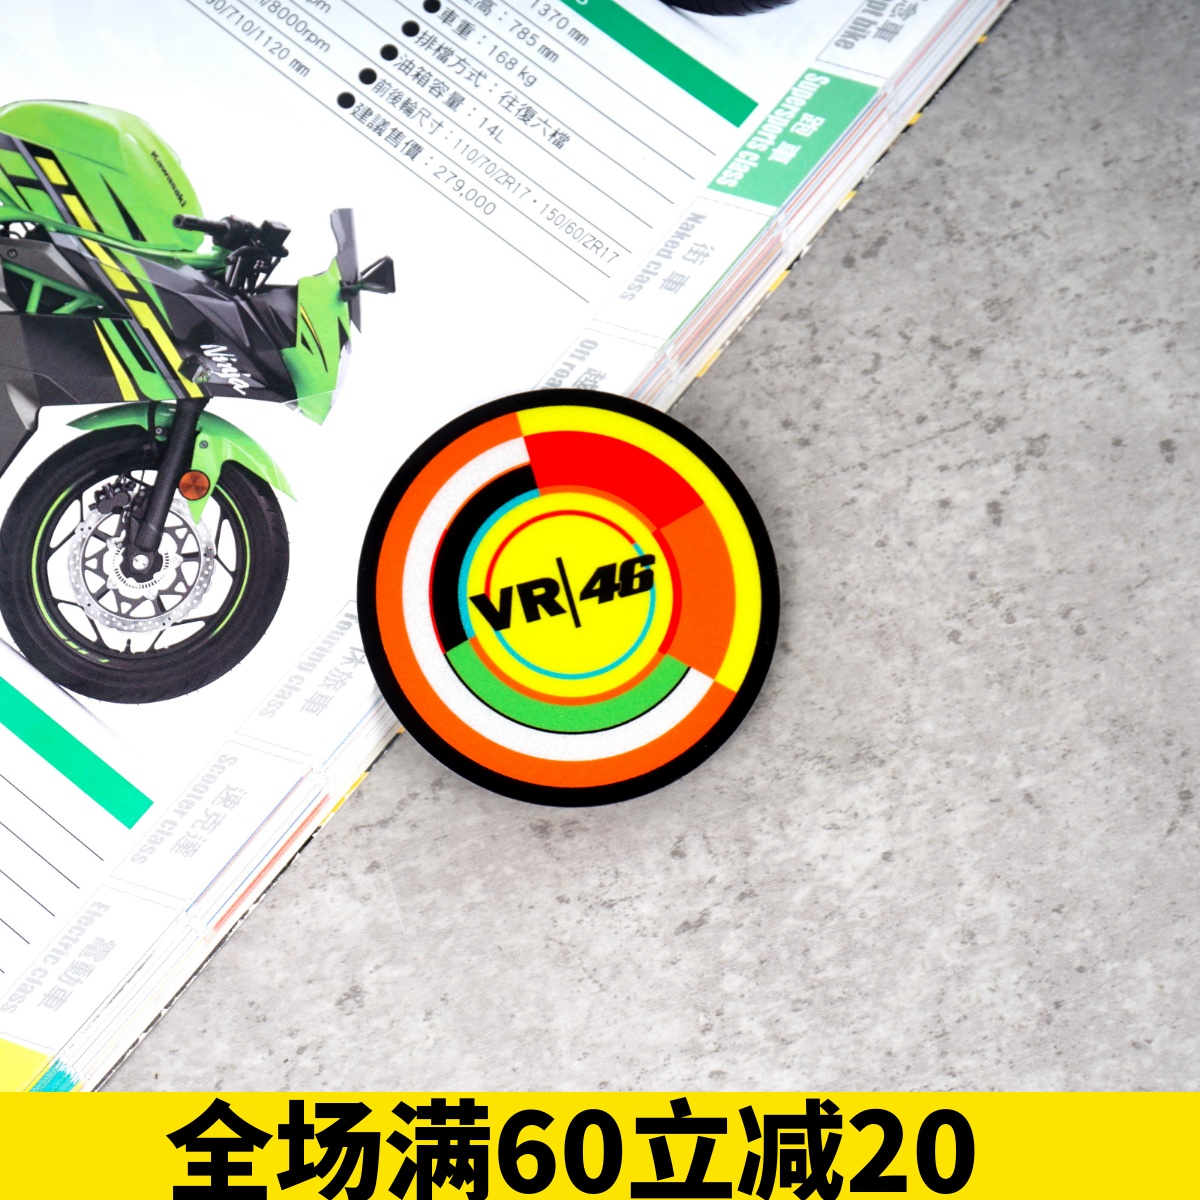 雅马哈罗西46号车手贴纸 摩托机车 踏板电单车 小牛 趣味反光贴纸